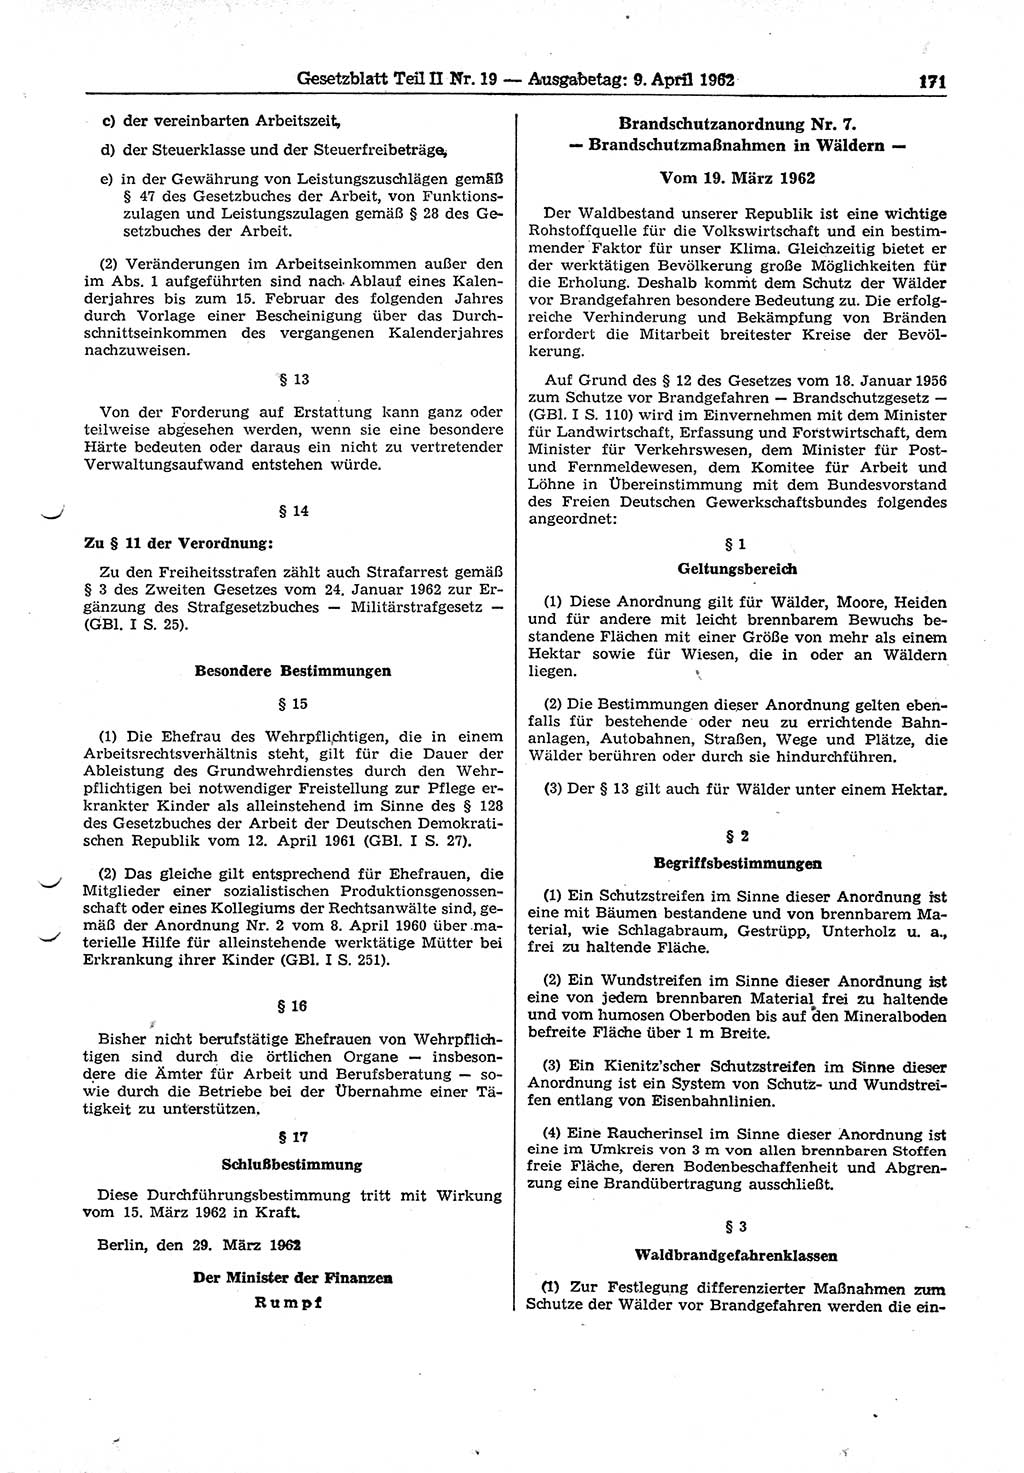 Gesetzblatt (GBl.) der Deutschen Demokratischen Republik (DDR) Teil ⅠⅠ 1962, Seite 171 (GBl. DDR ⅠⅠ 1962, S. 171)